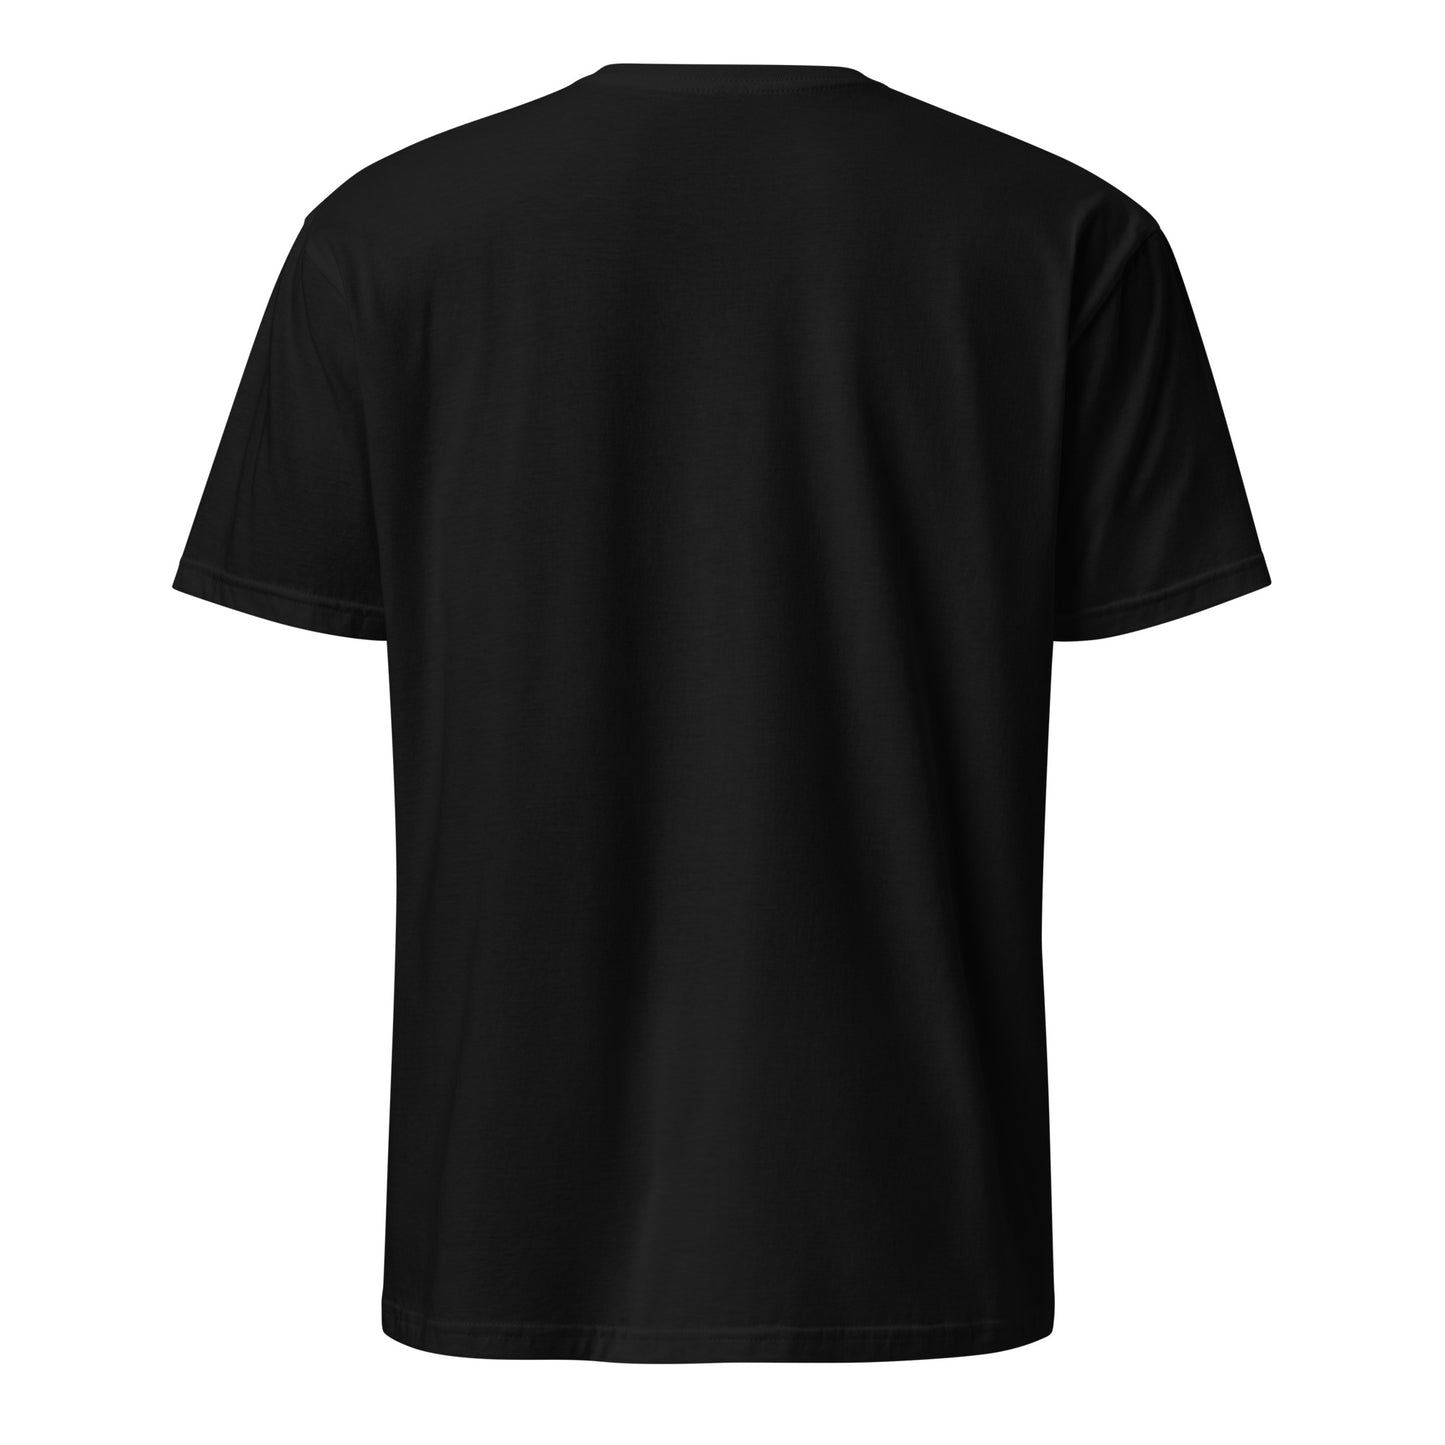 "Vispilänkauppa" unisex t-paita (logo isolla rinnassa)